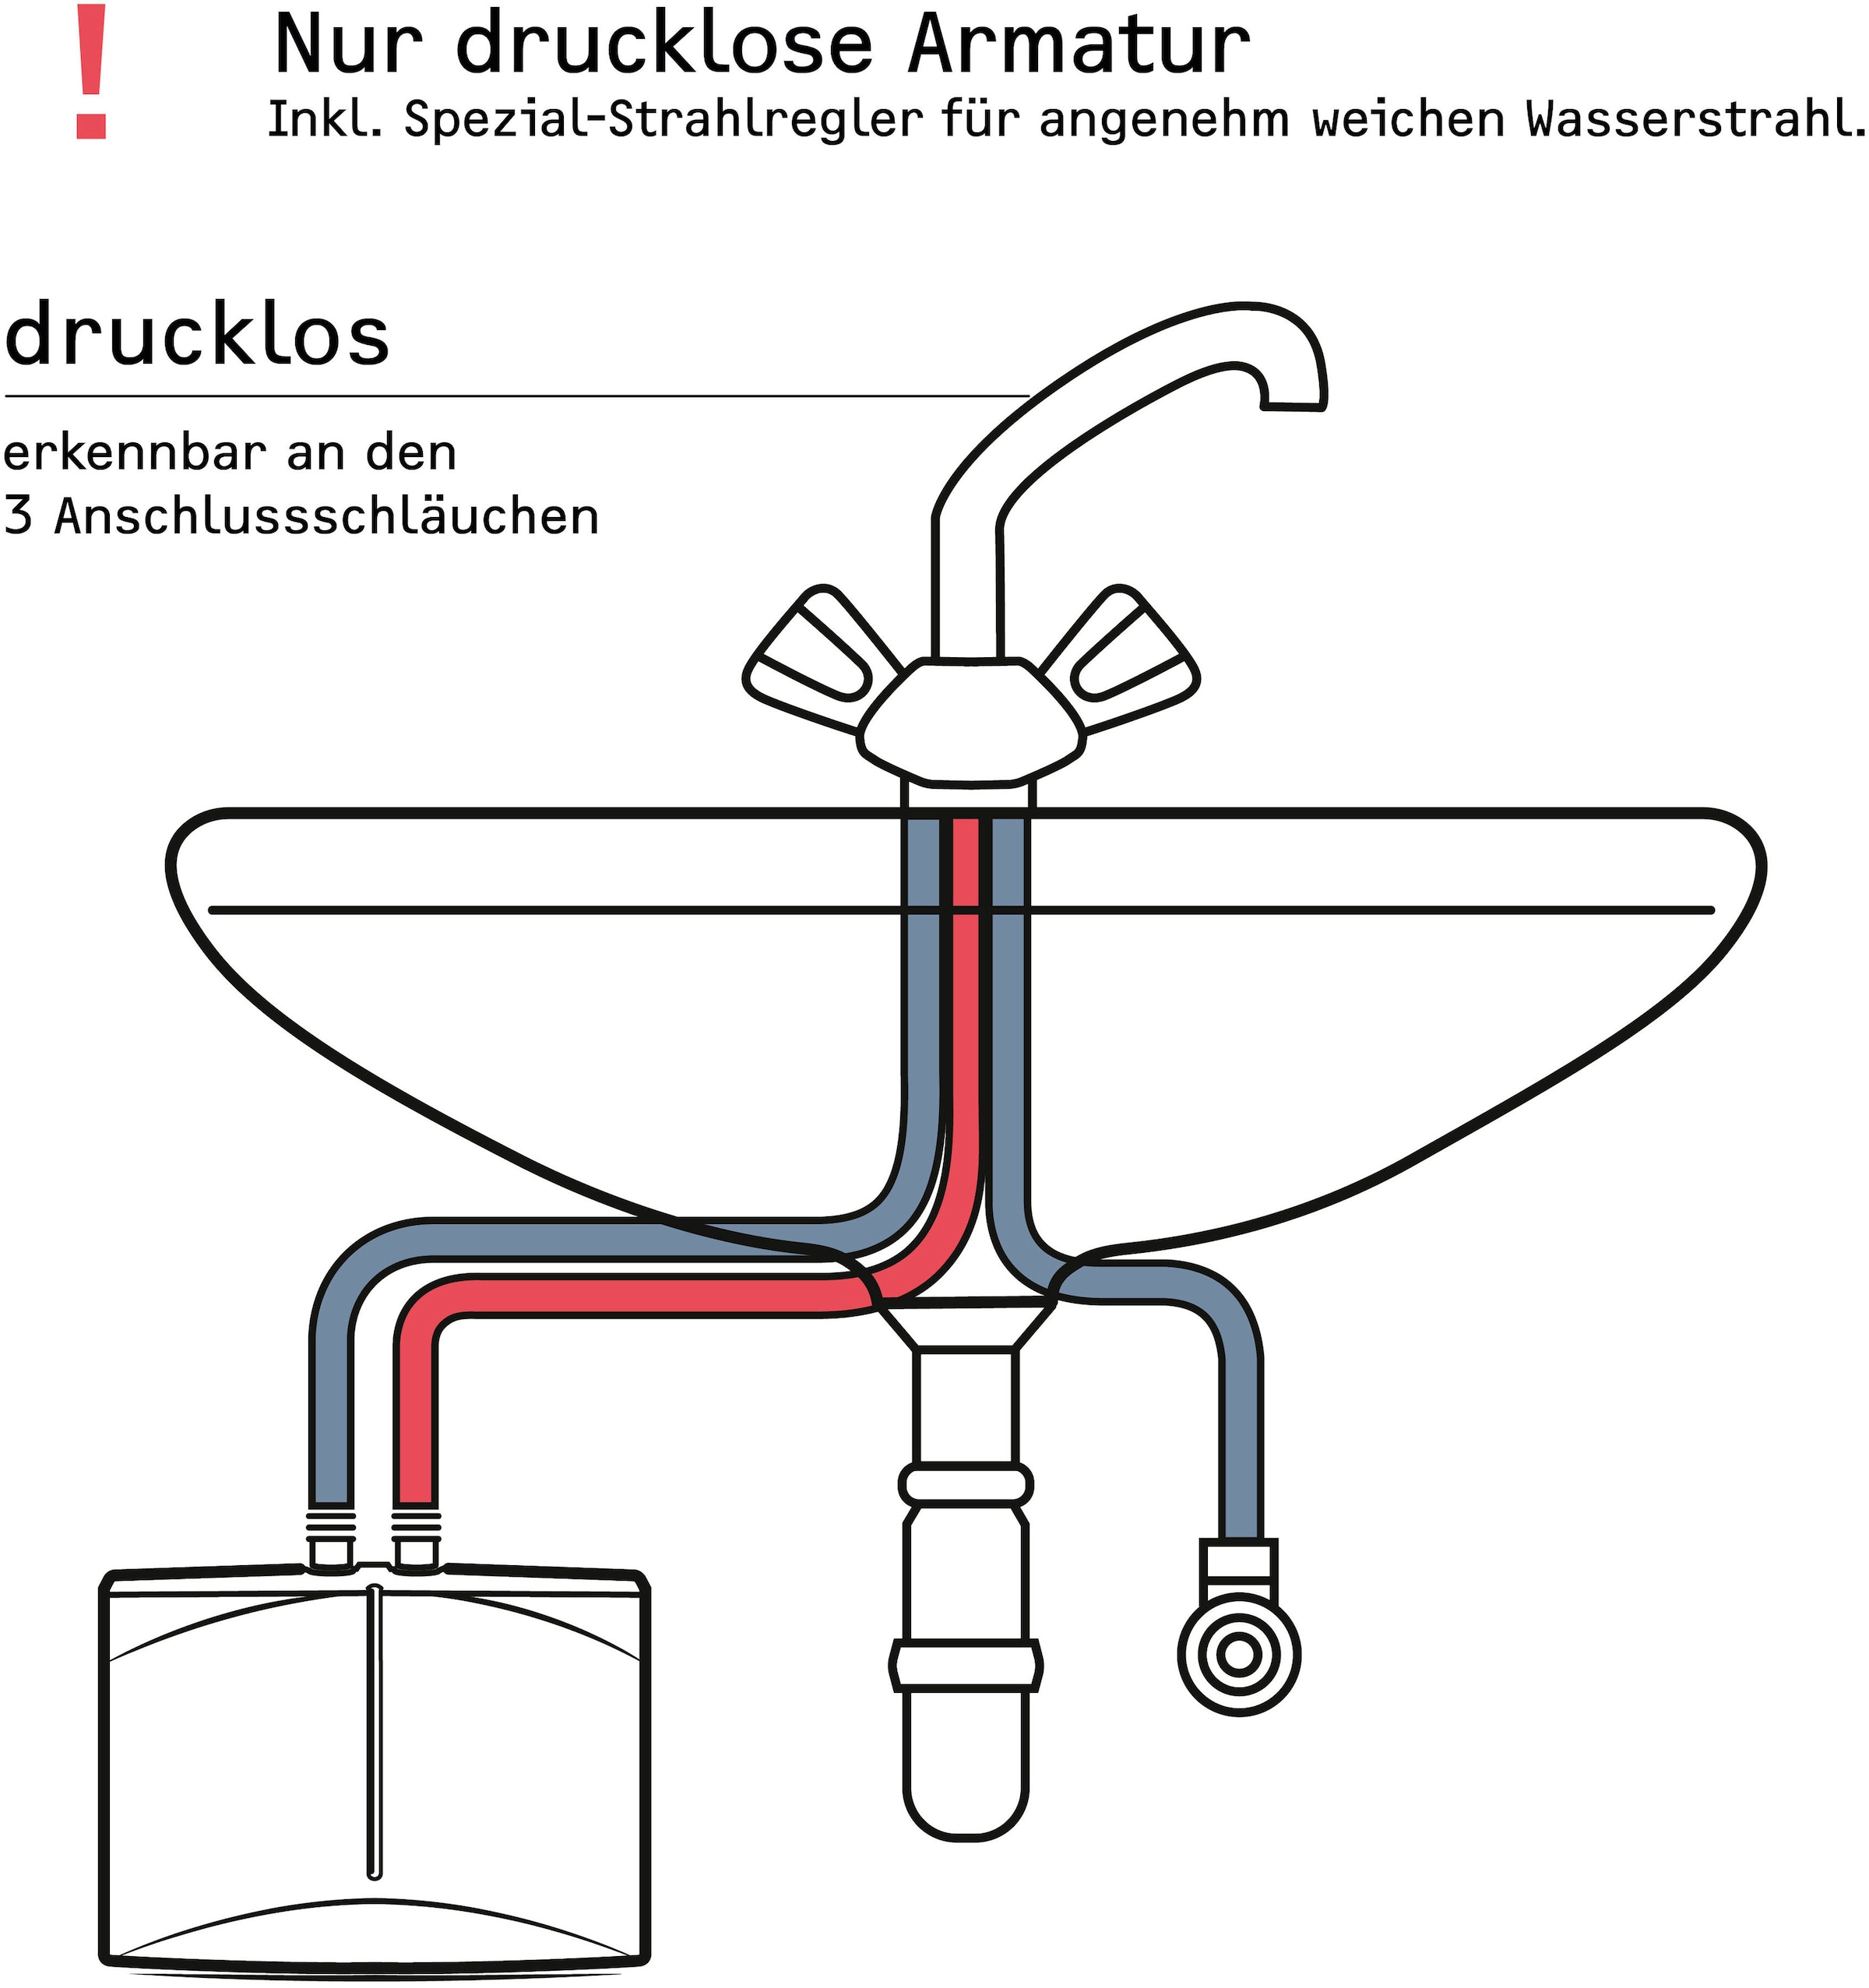 STIEBEL ELTRON Klein-Durchlauferhitzer »DNM 3 für Handwaschbecken, 3,5 kW, mit Stecker«, sofort lauwarmes Wasser (ca. 35°C), steckerfertig